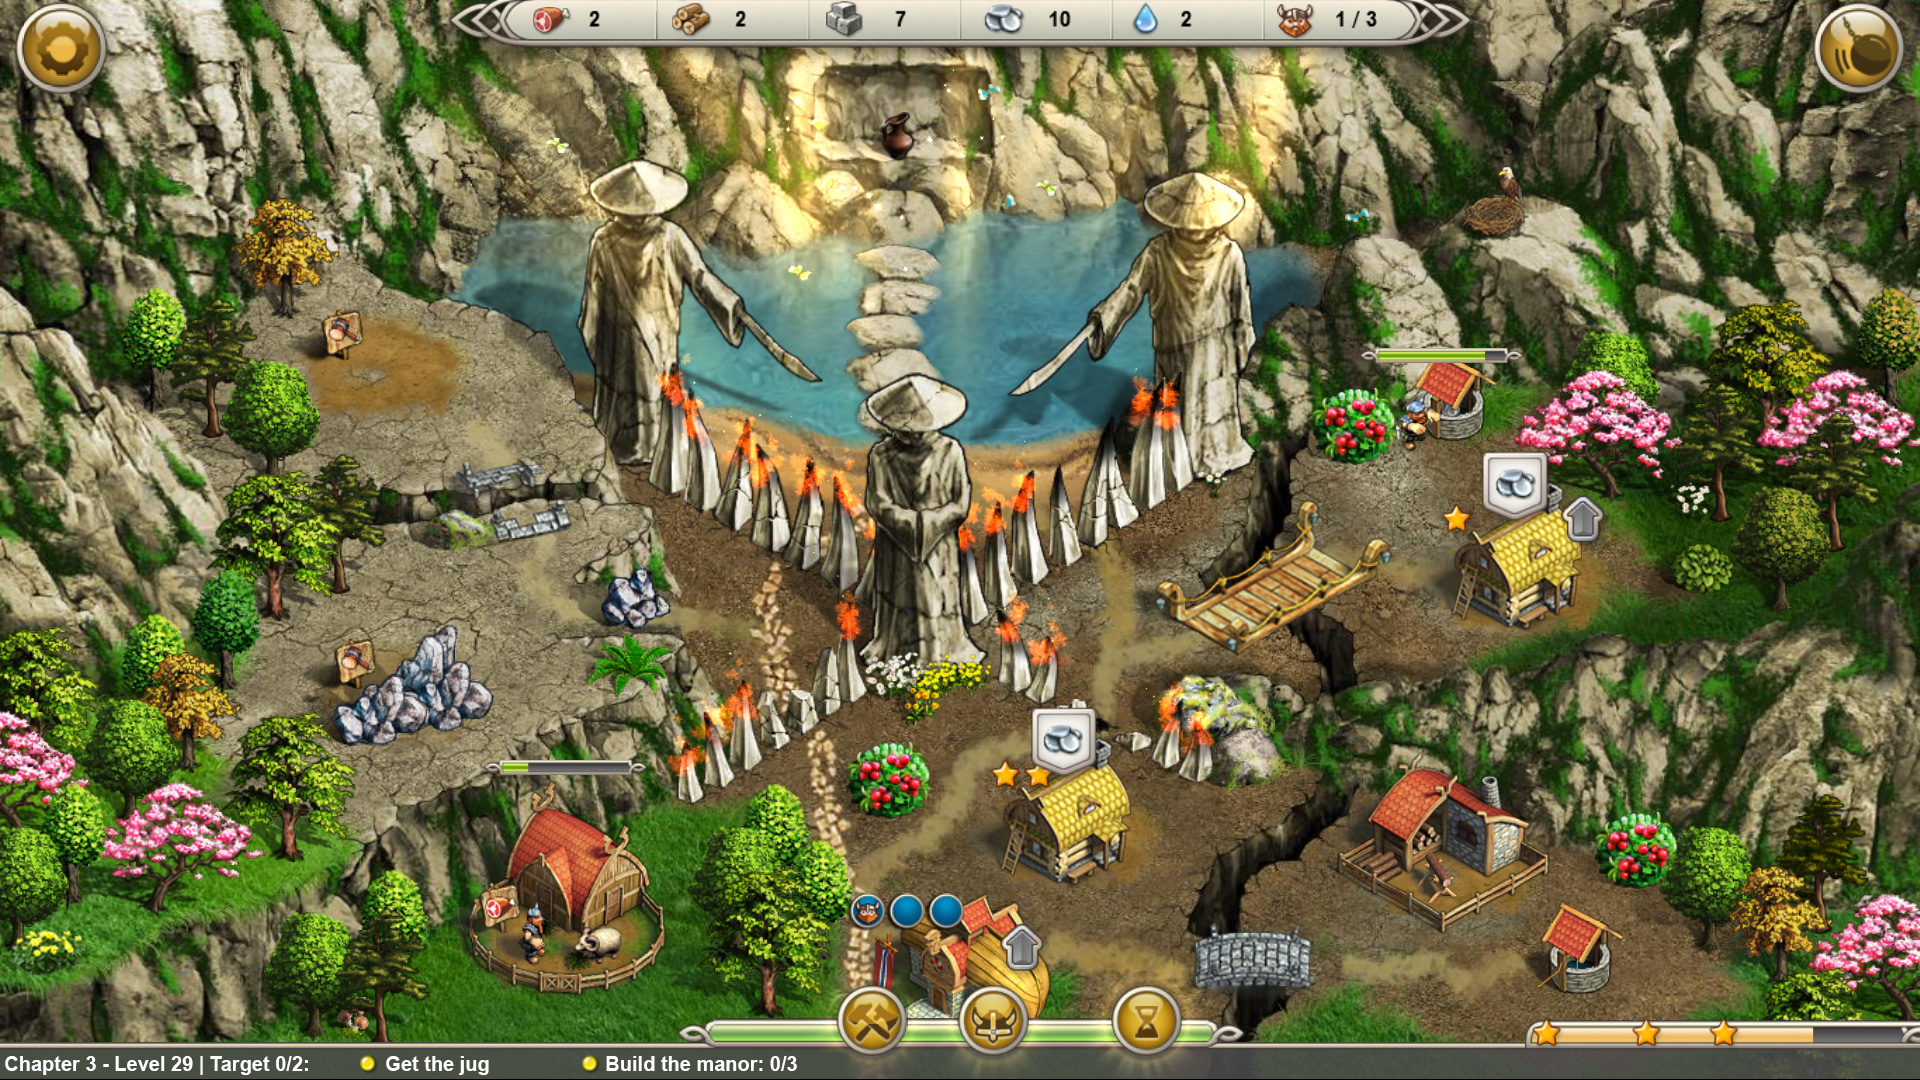 Viking Saga: Epic Adventure screenshot